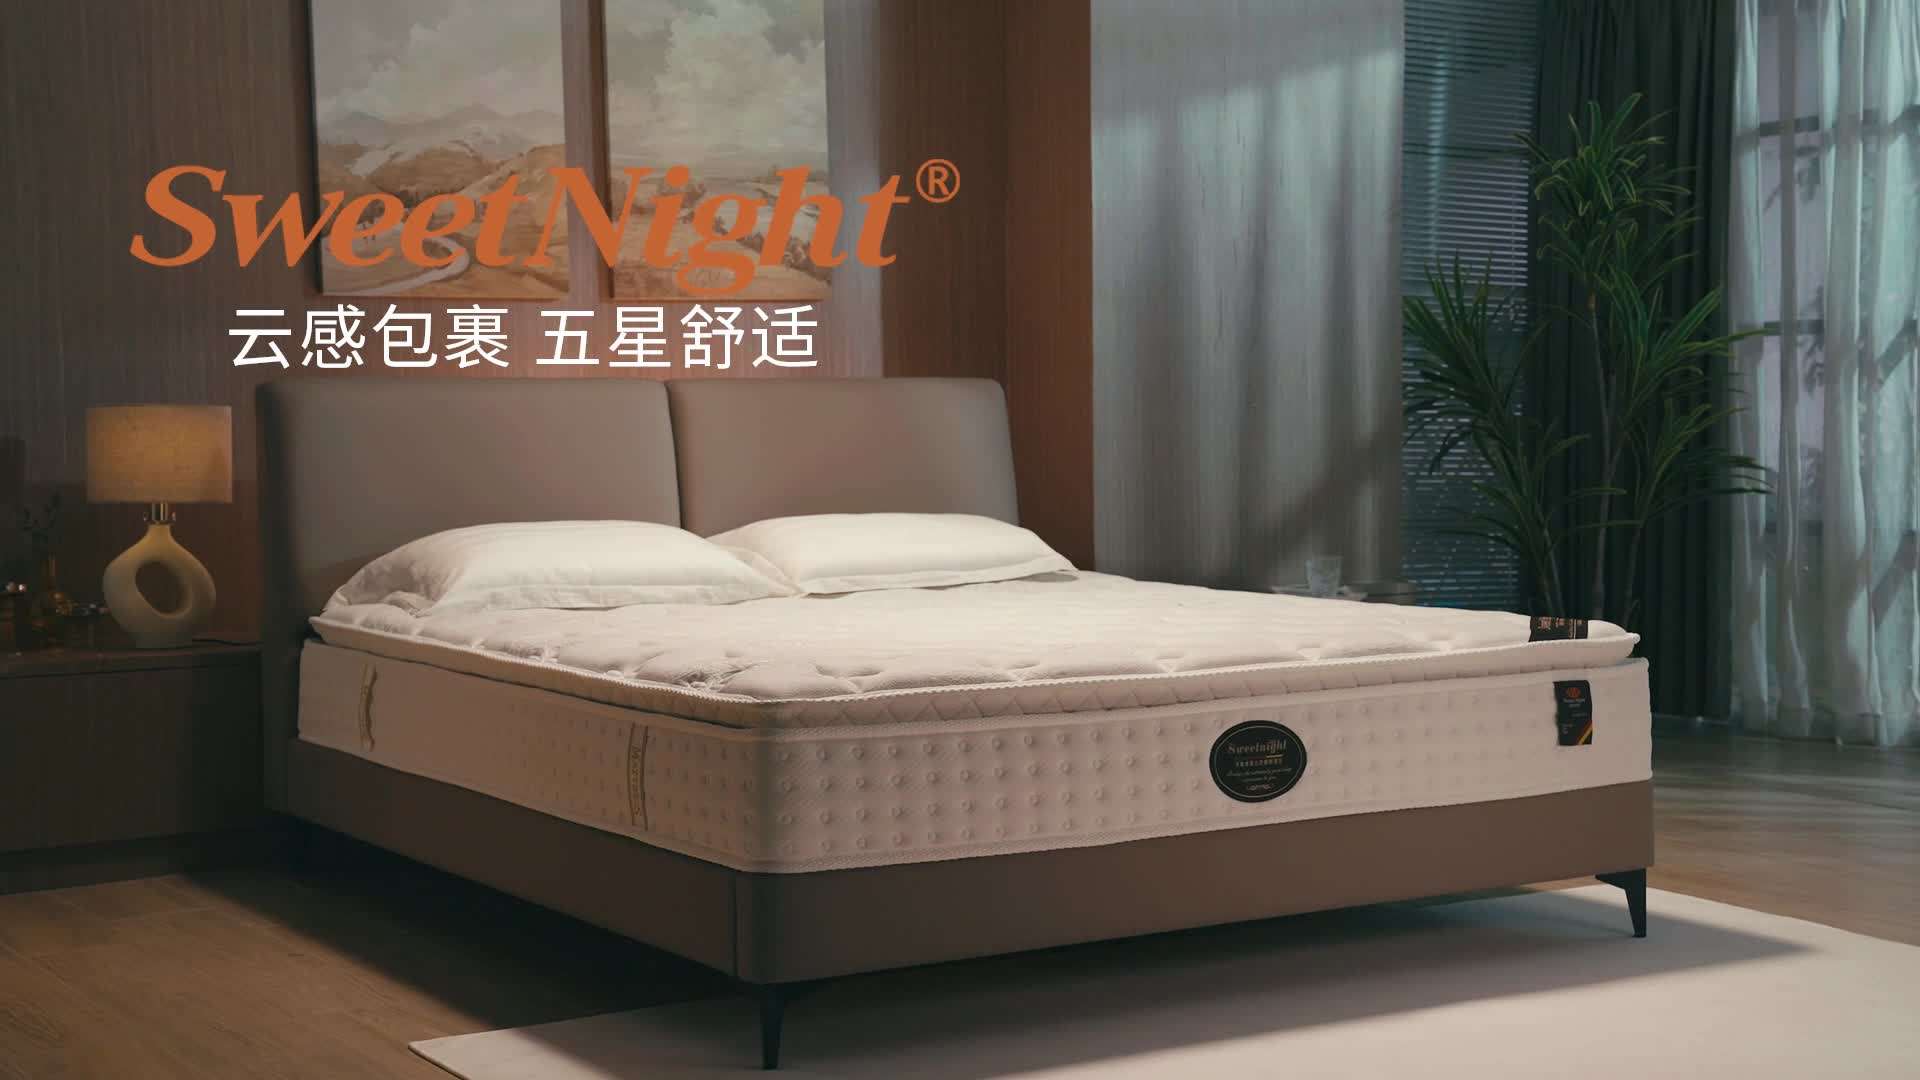 SW床垫产品视频